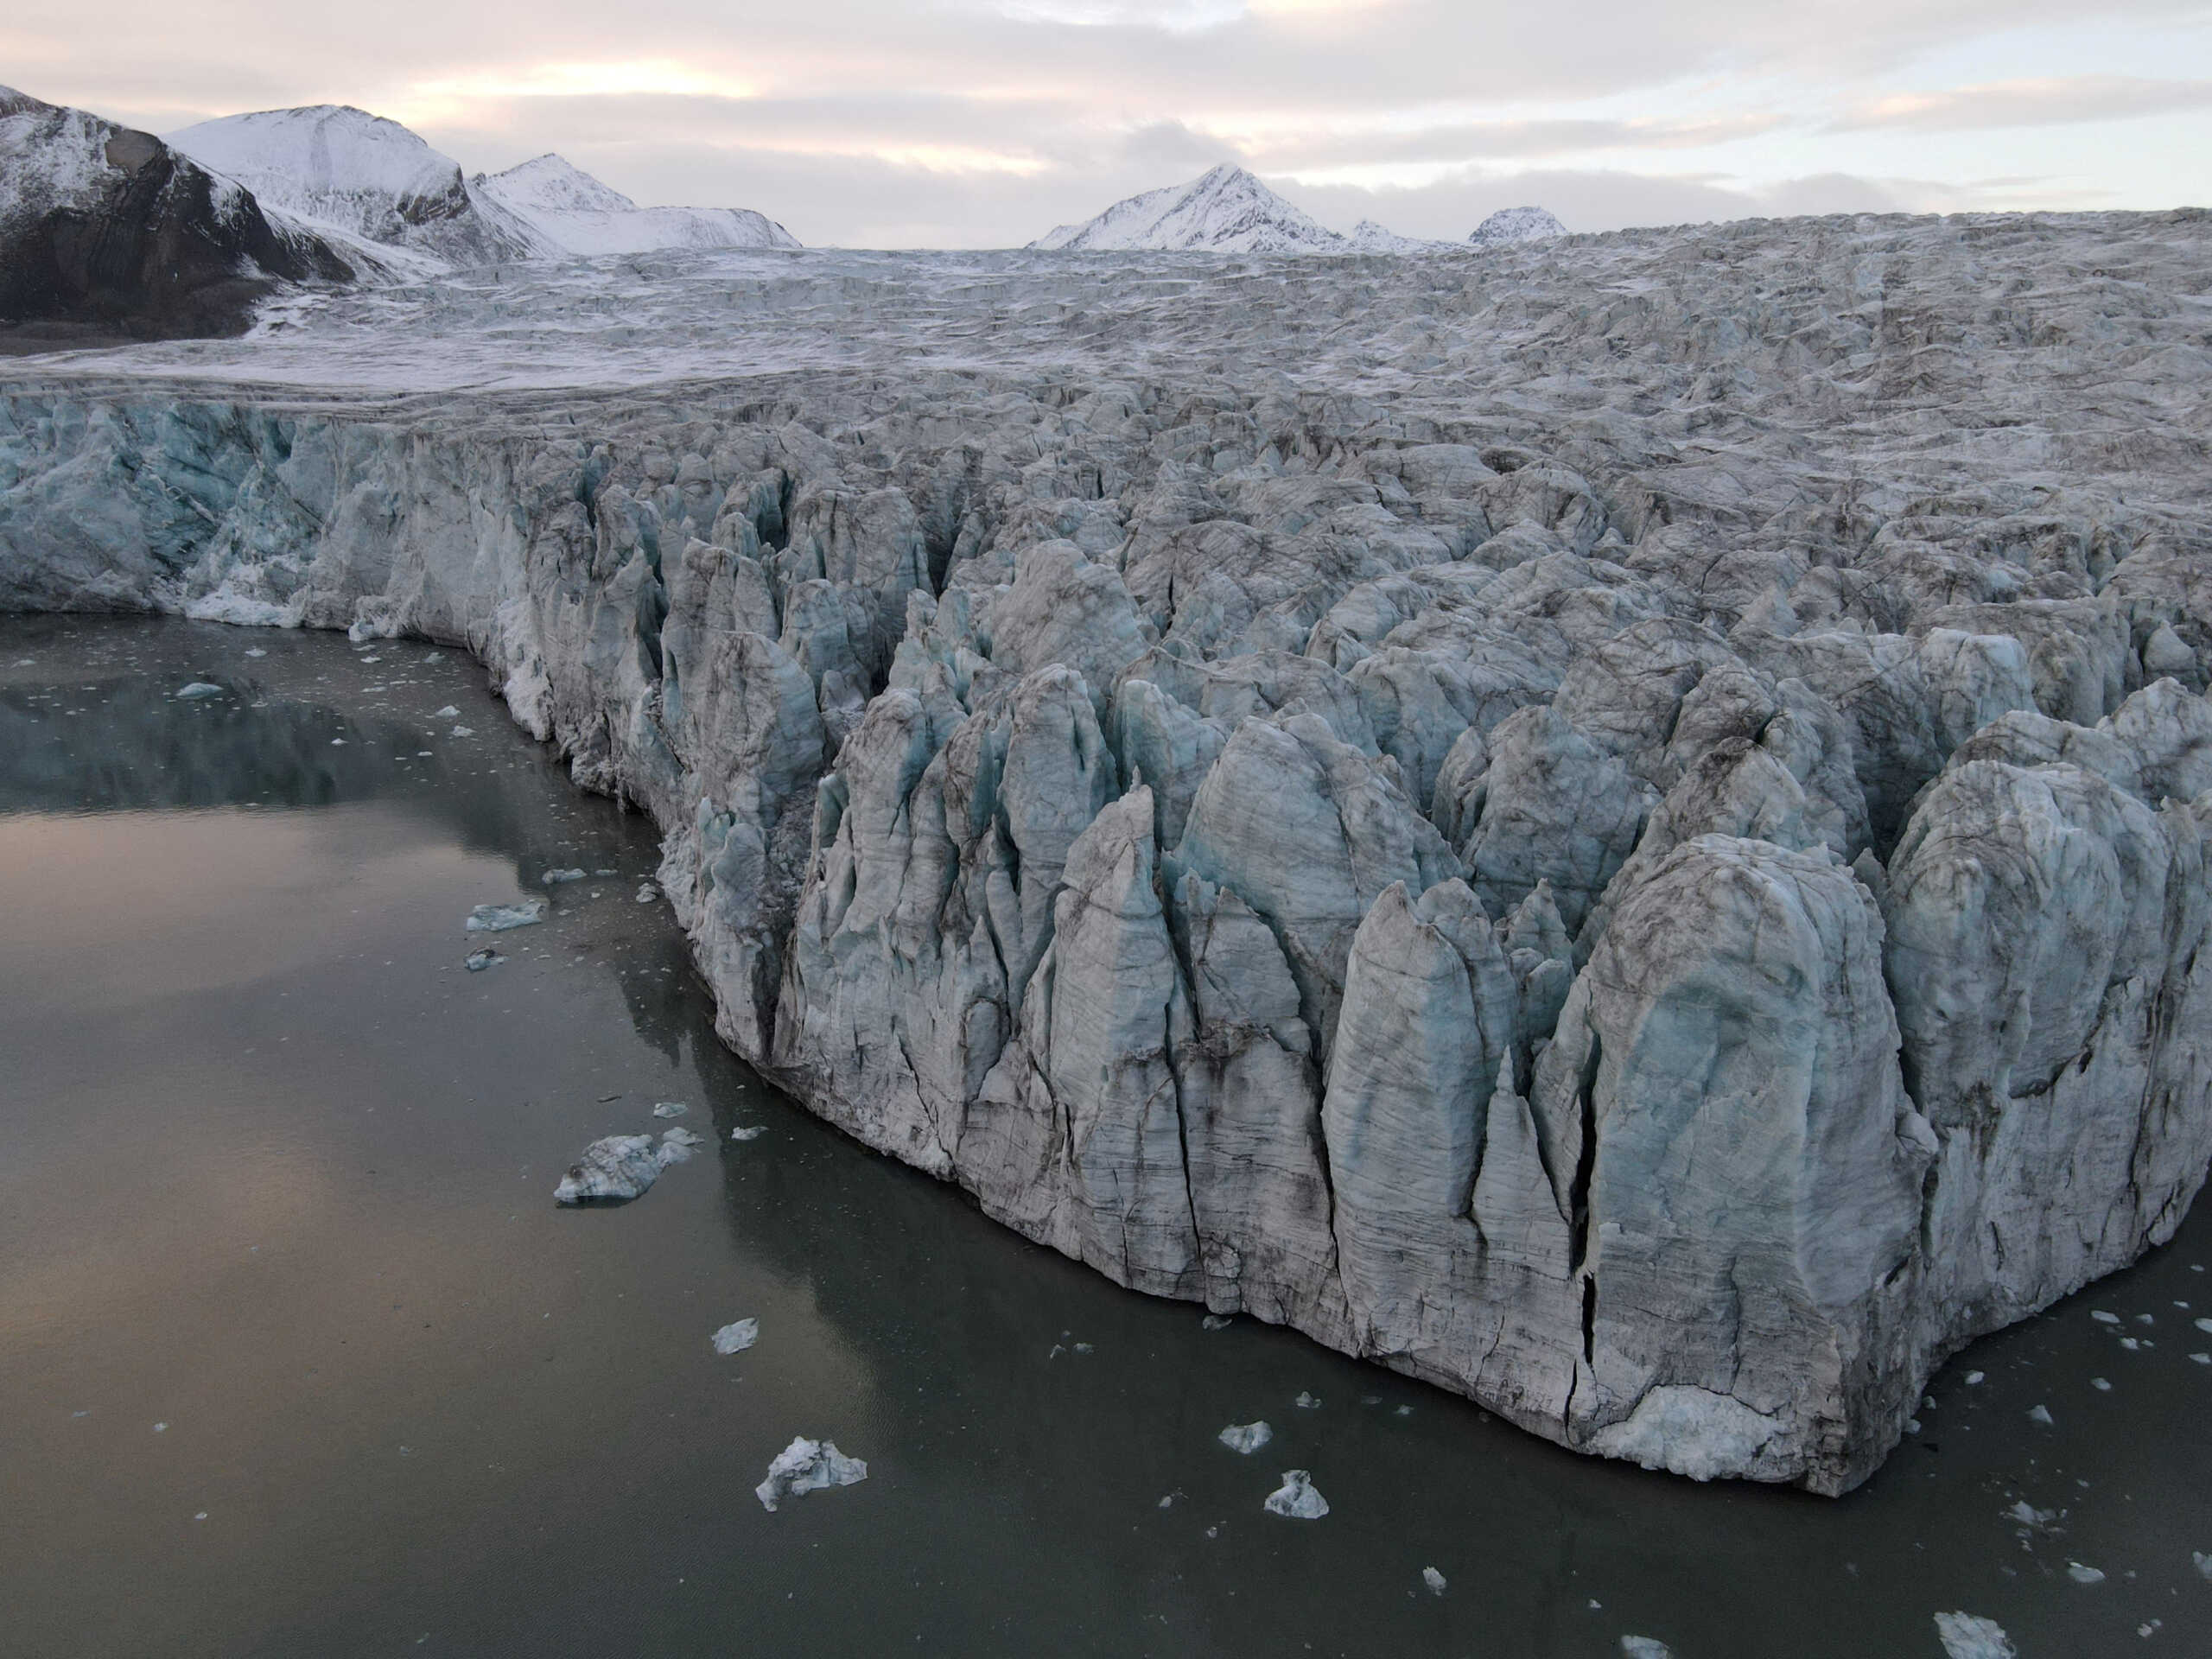 Ο παγετώνας «Ημέρα της Κρίσης» λιώνει και απειλεί με πρωτόγνωρη καταστροφή τον πλανήτη